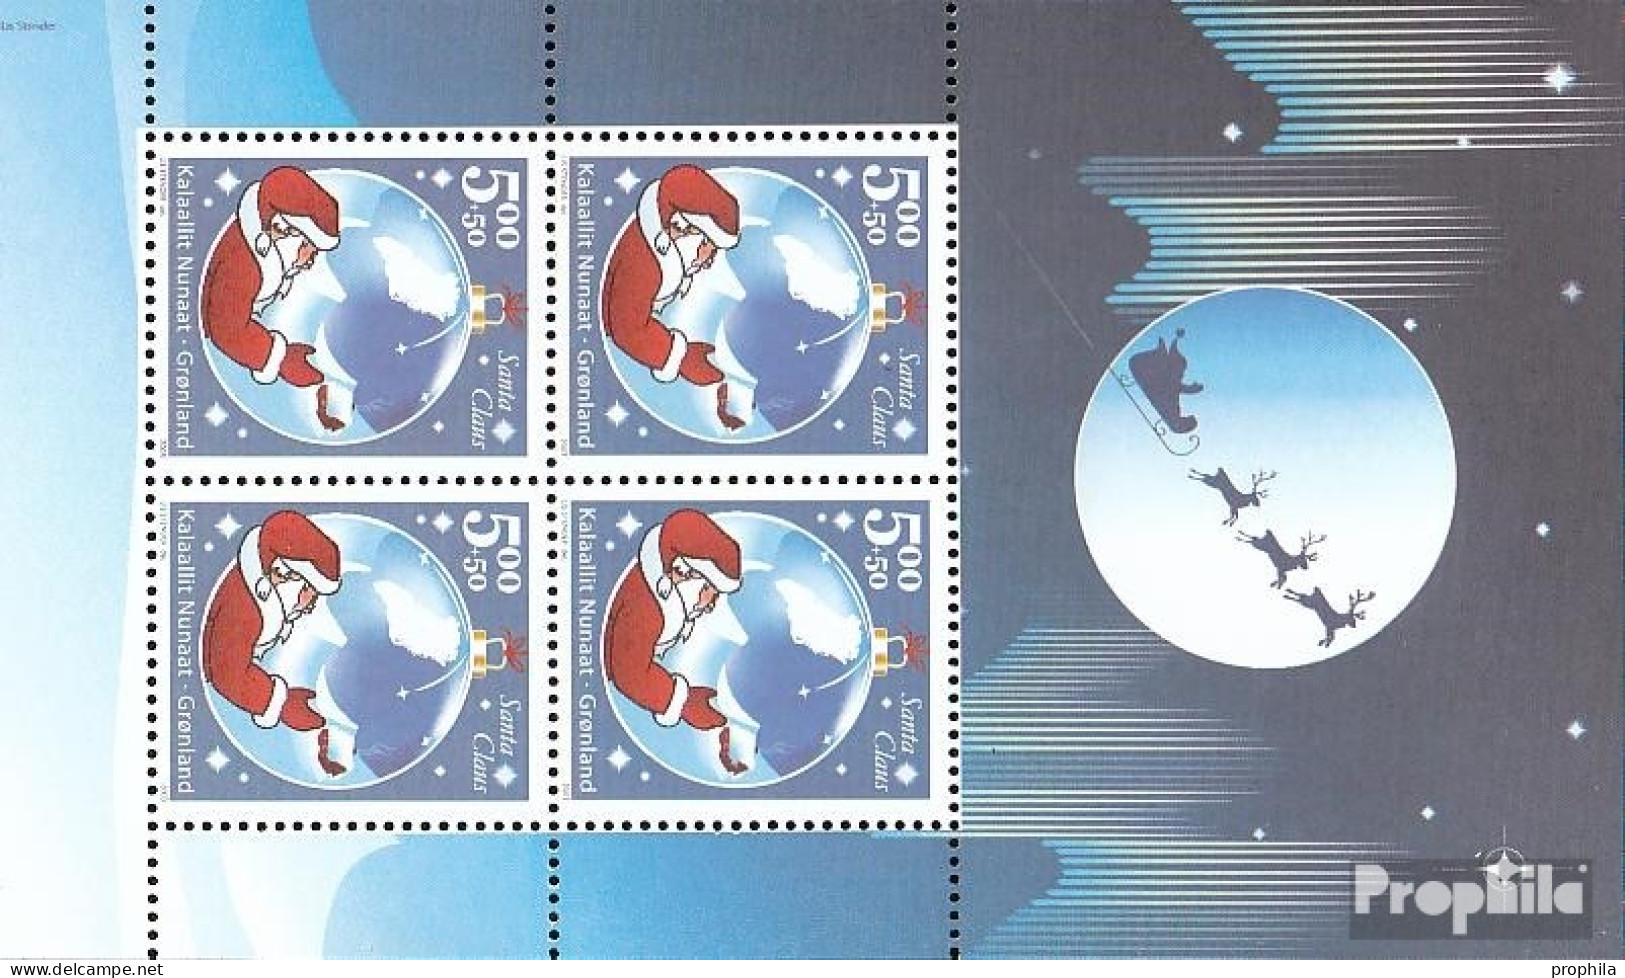 Dänemark - Grönland Block26 (kompl.Ausg.) Postfrisch 2003 Santa Claus Of Greenland - Bloques